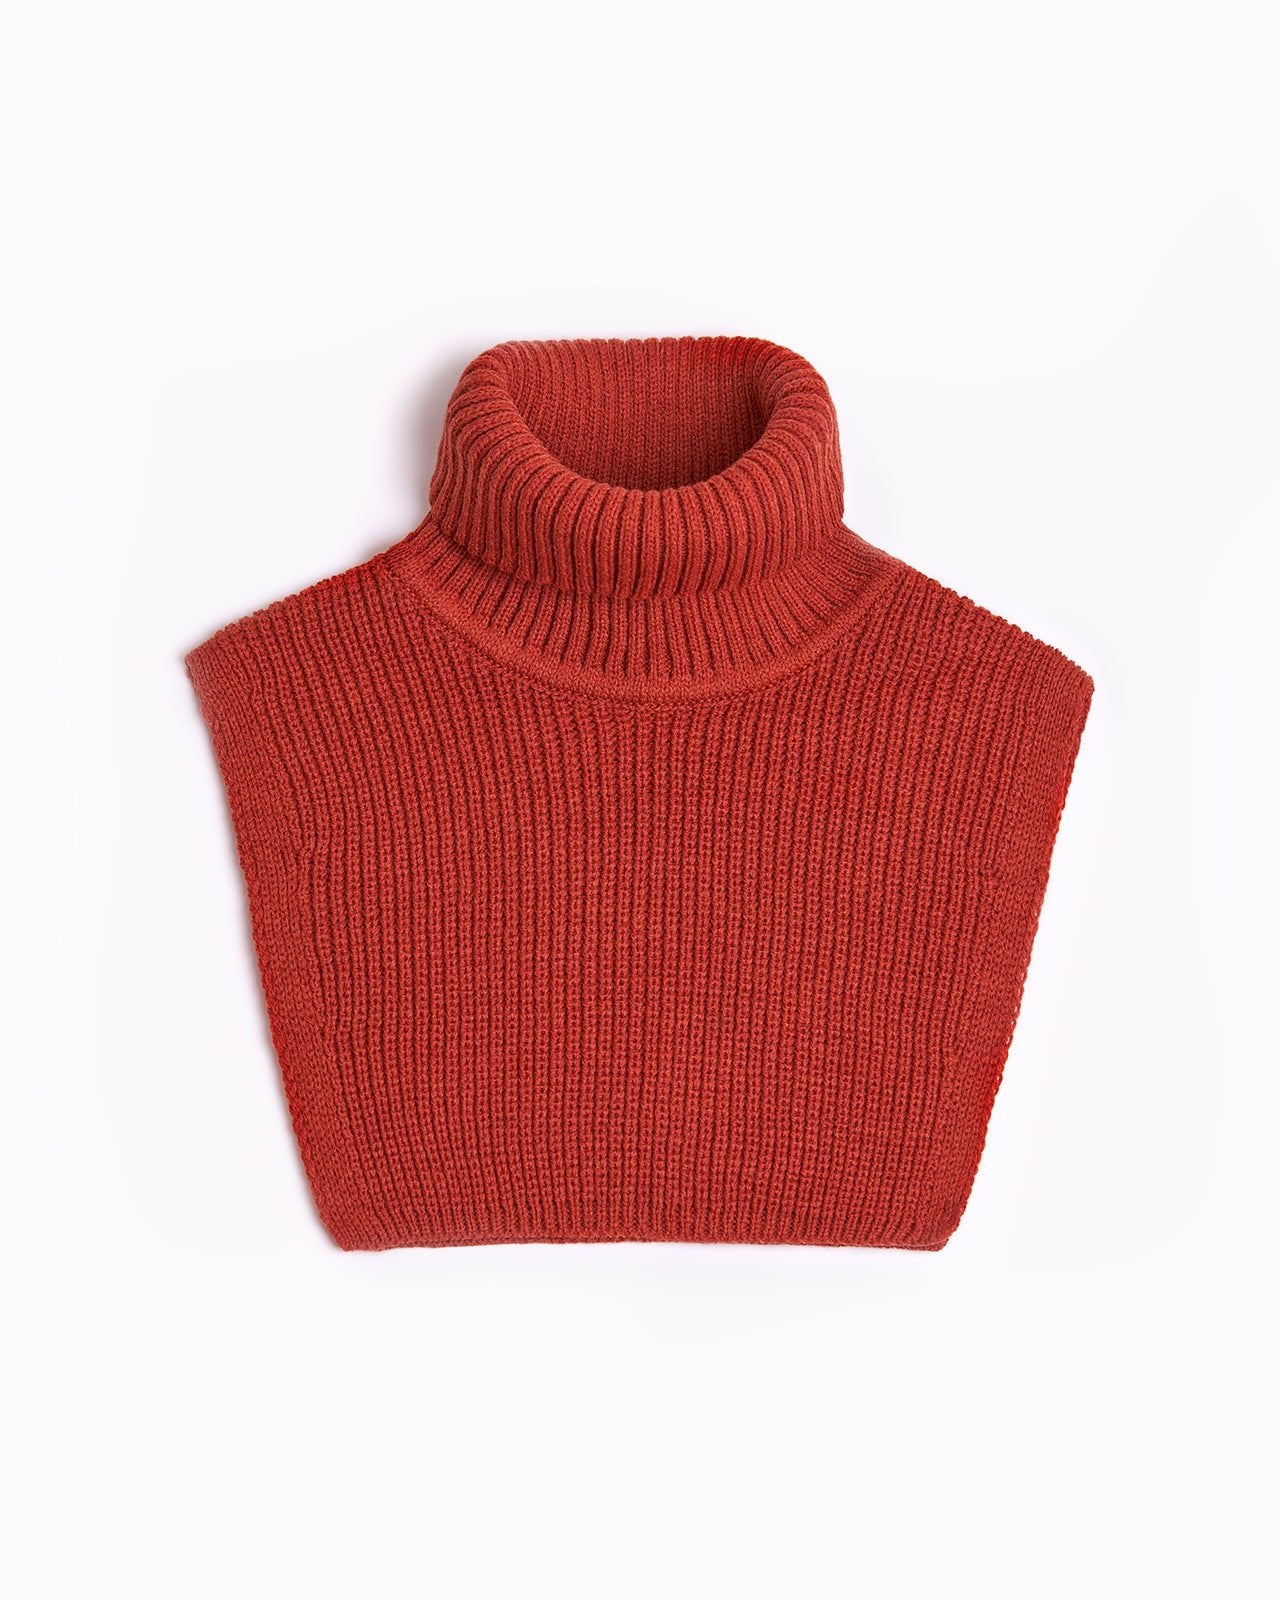 red wool turtleneck collar